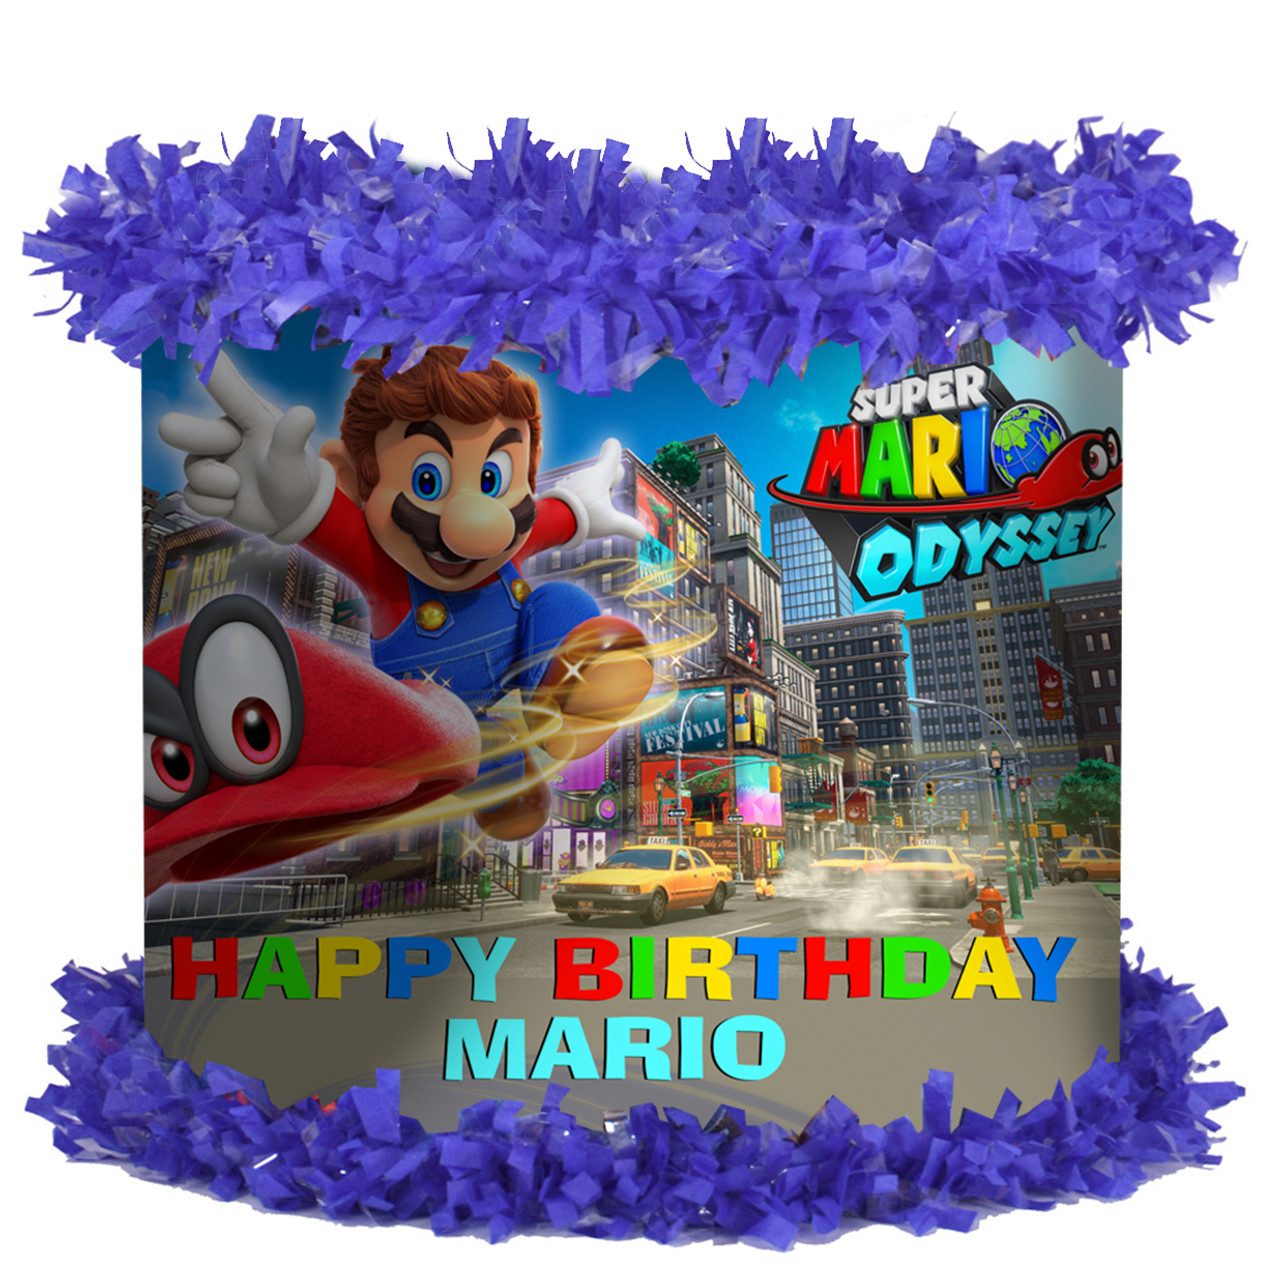 Super Mario Odyssey Personalized Pinata